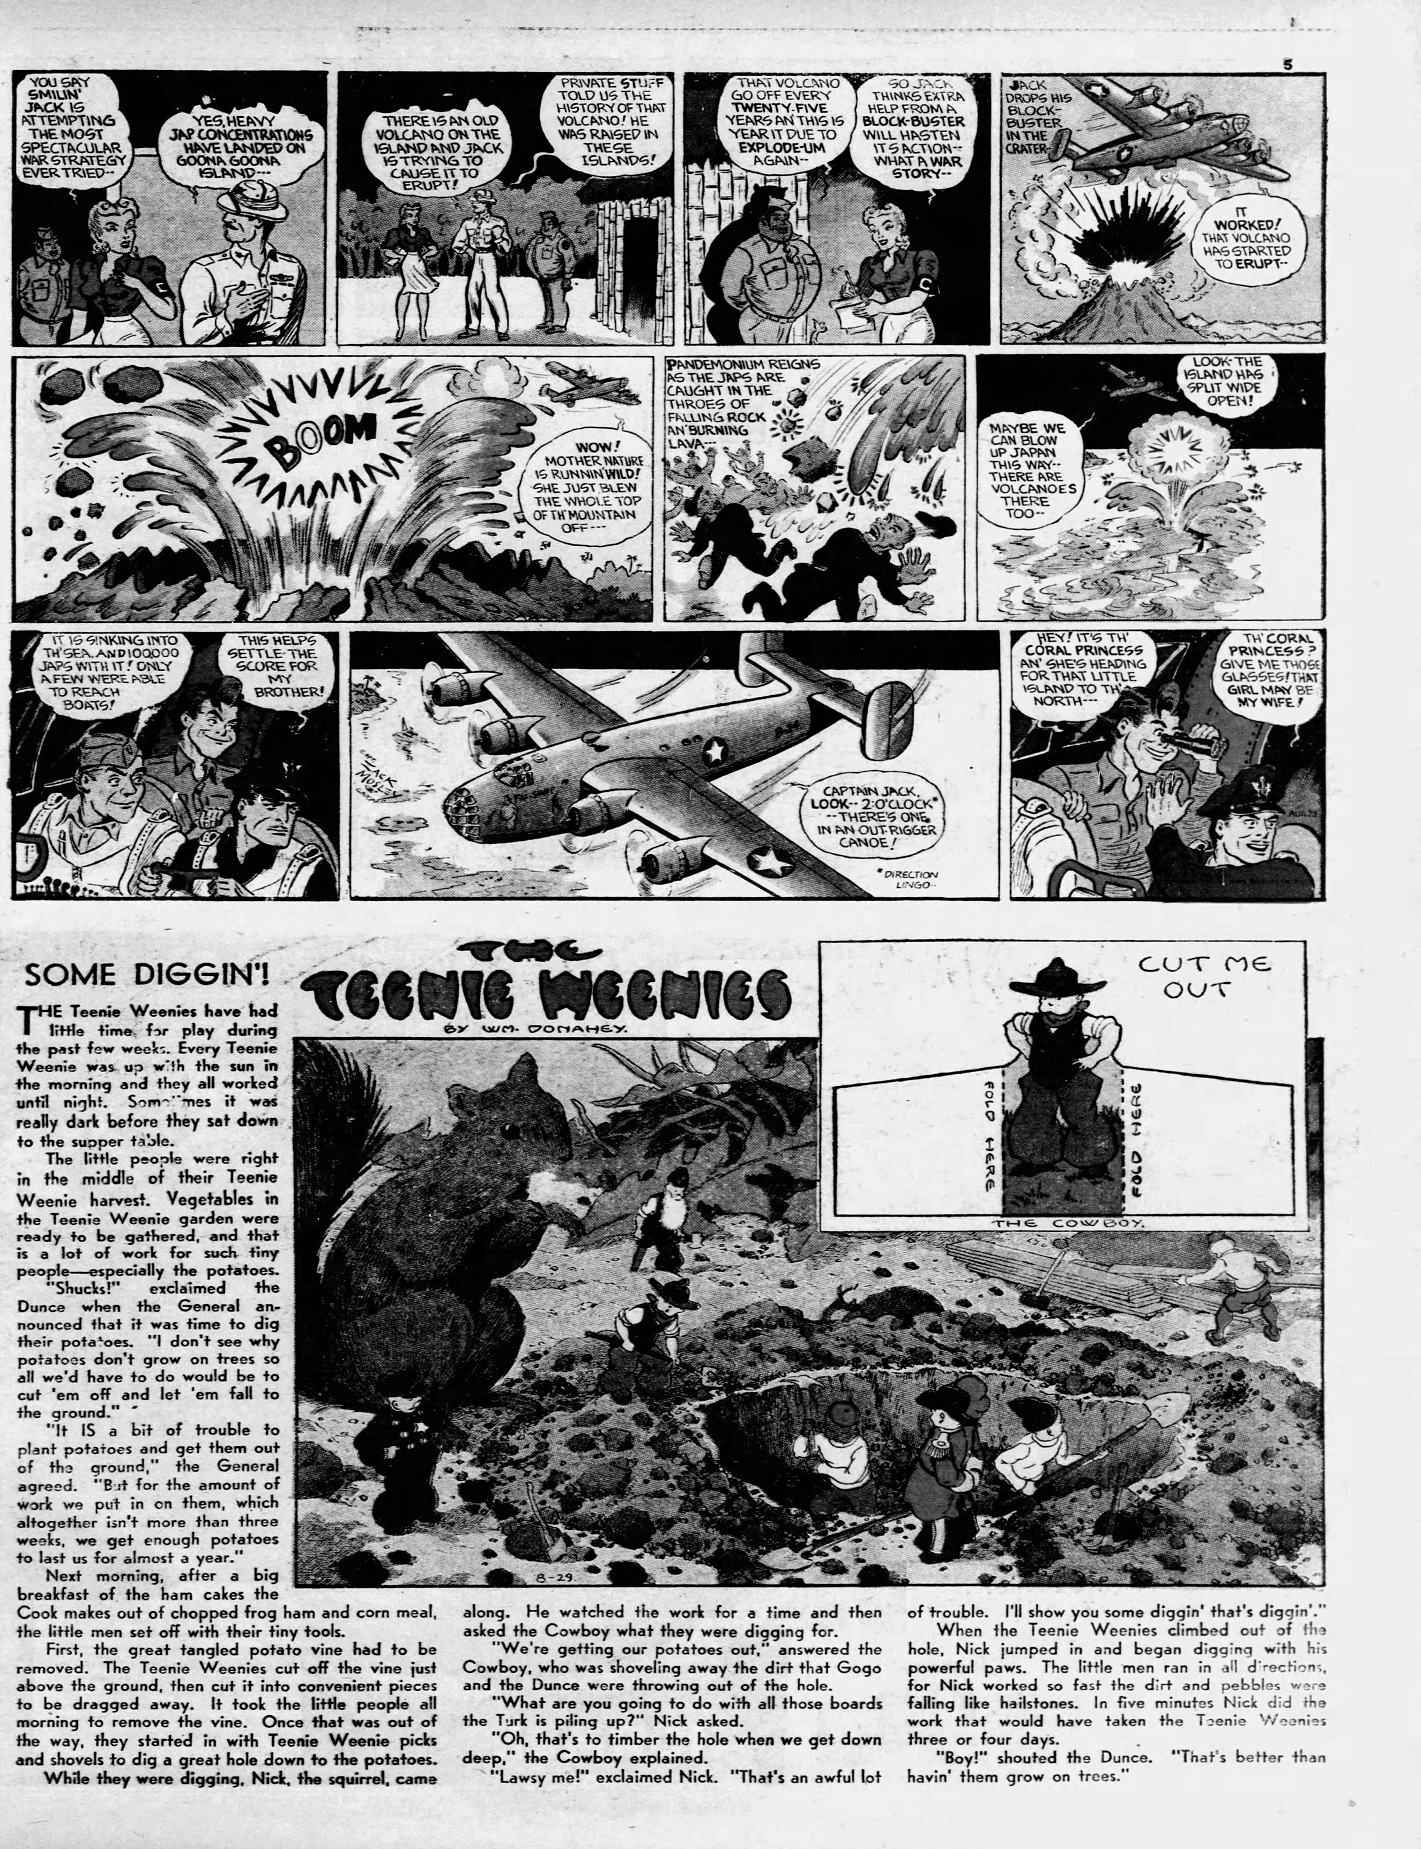 Daily_News_Sun__Aug_29__1943_(7).jpg